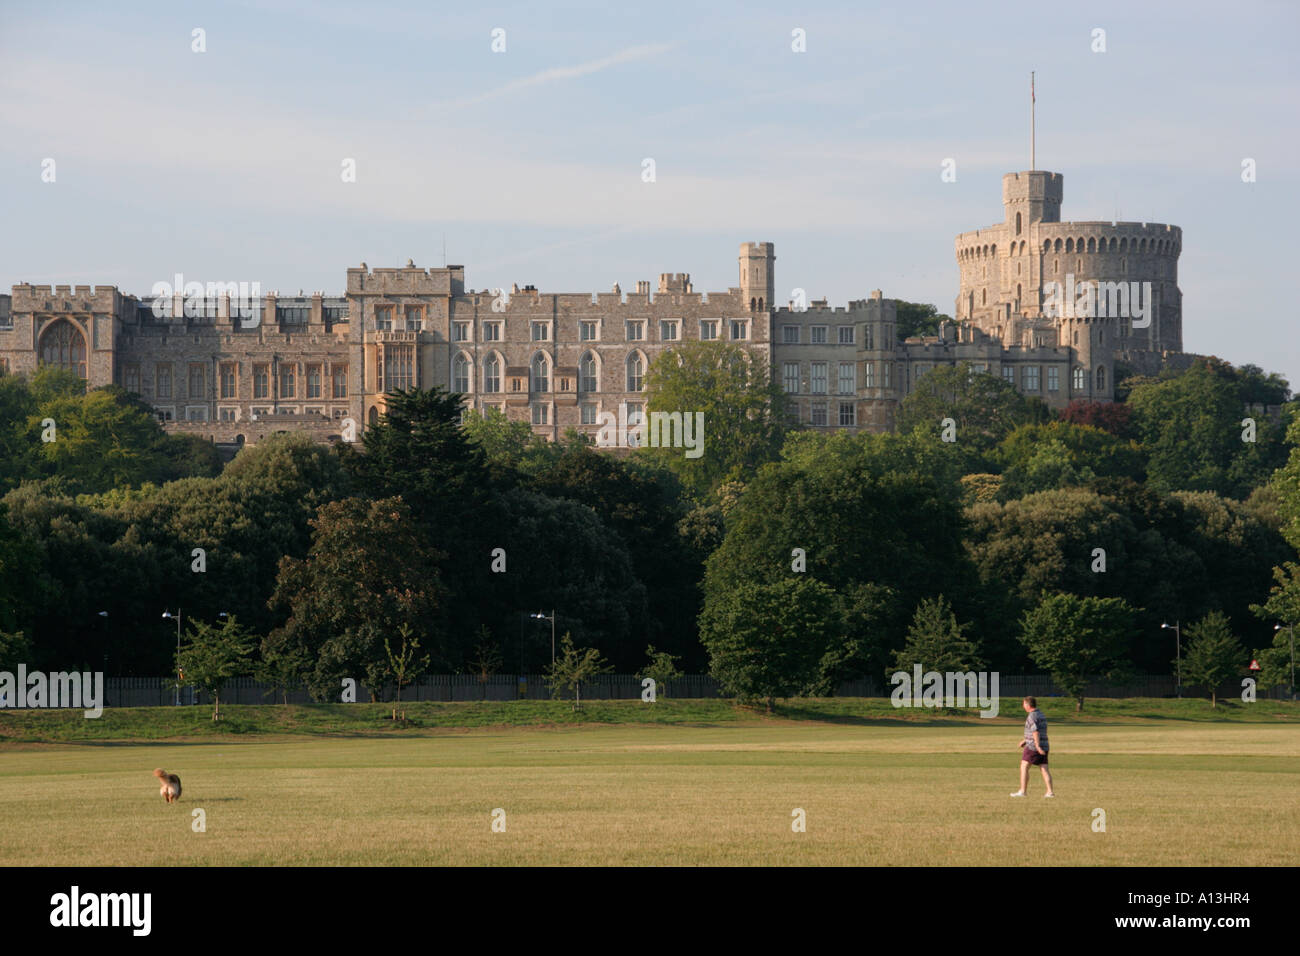 Le château de Windsor accueil de la reine angleterre uk Banque D'Images